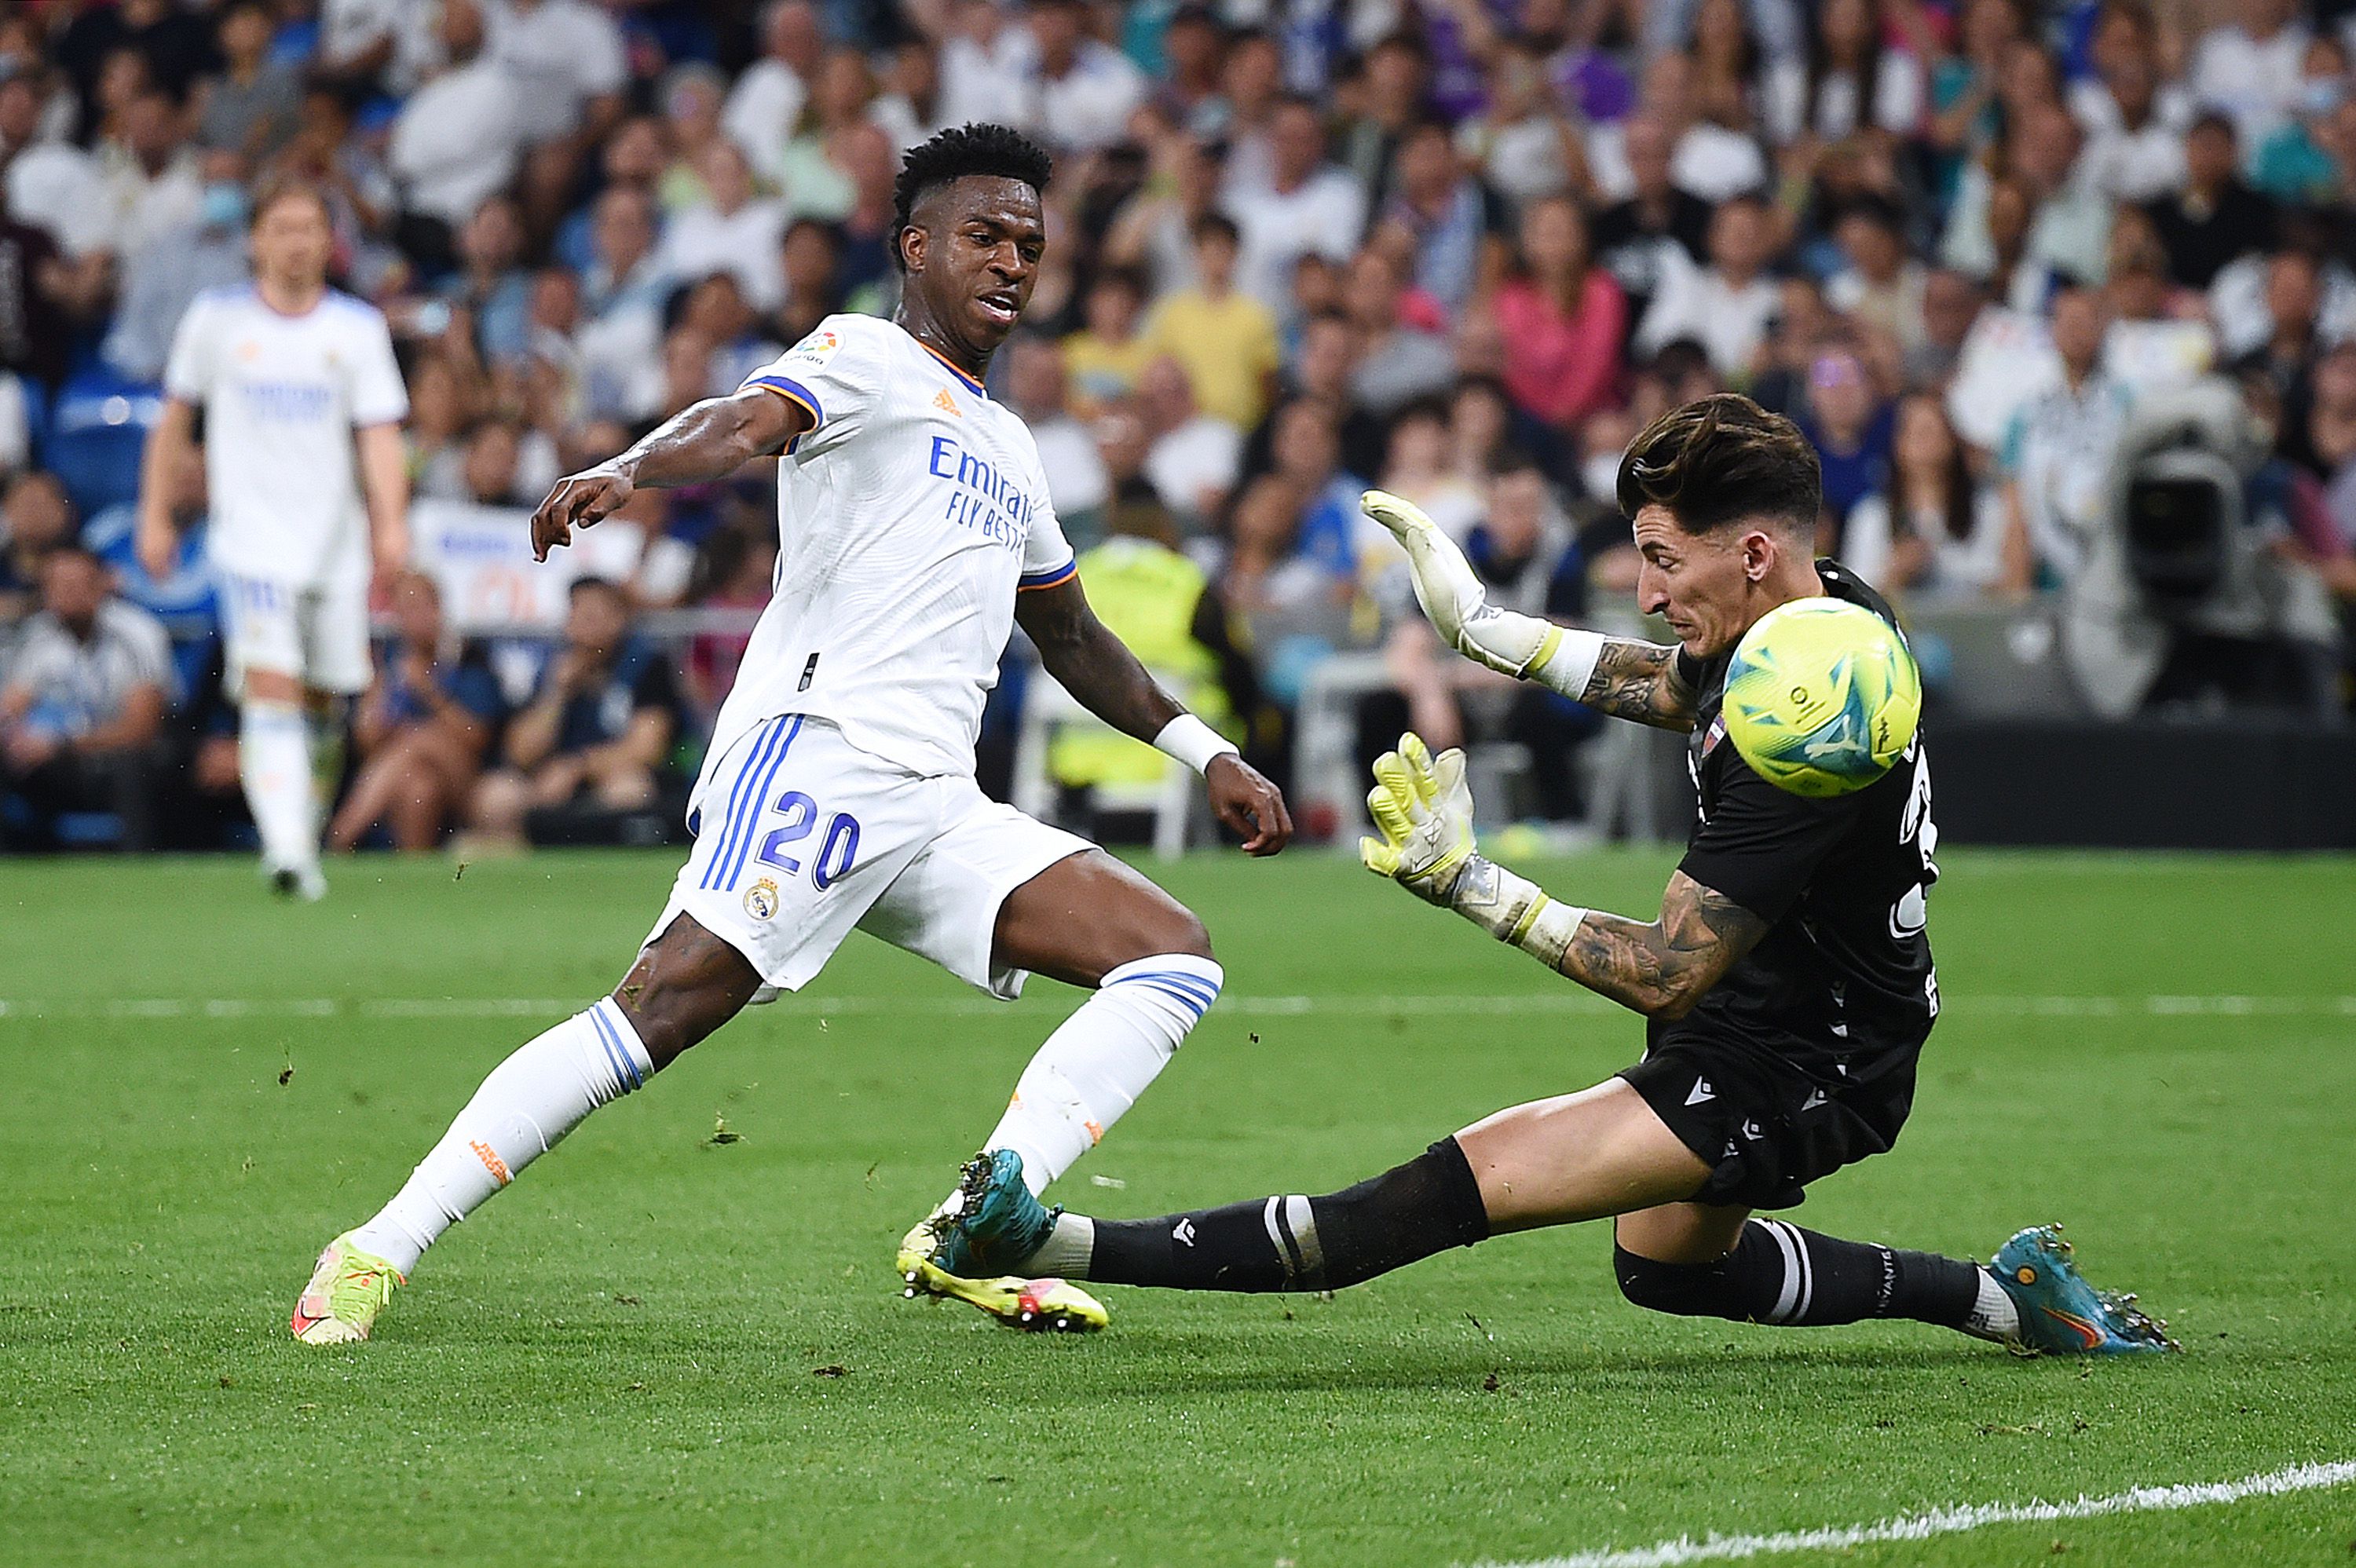 Vinícius Junior (fehérben) három gólt lőtt, mégis elsőként sietett az ellenfelet vigasztalni / Fotó: Getty Images